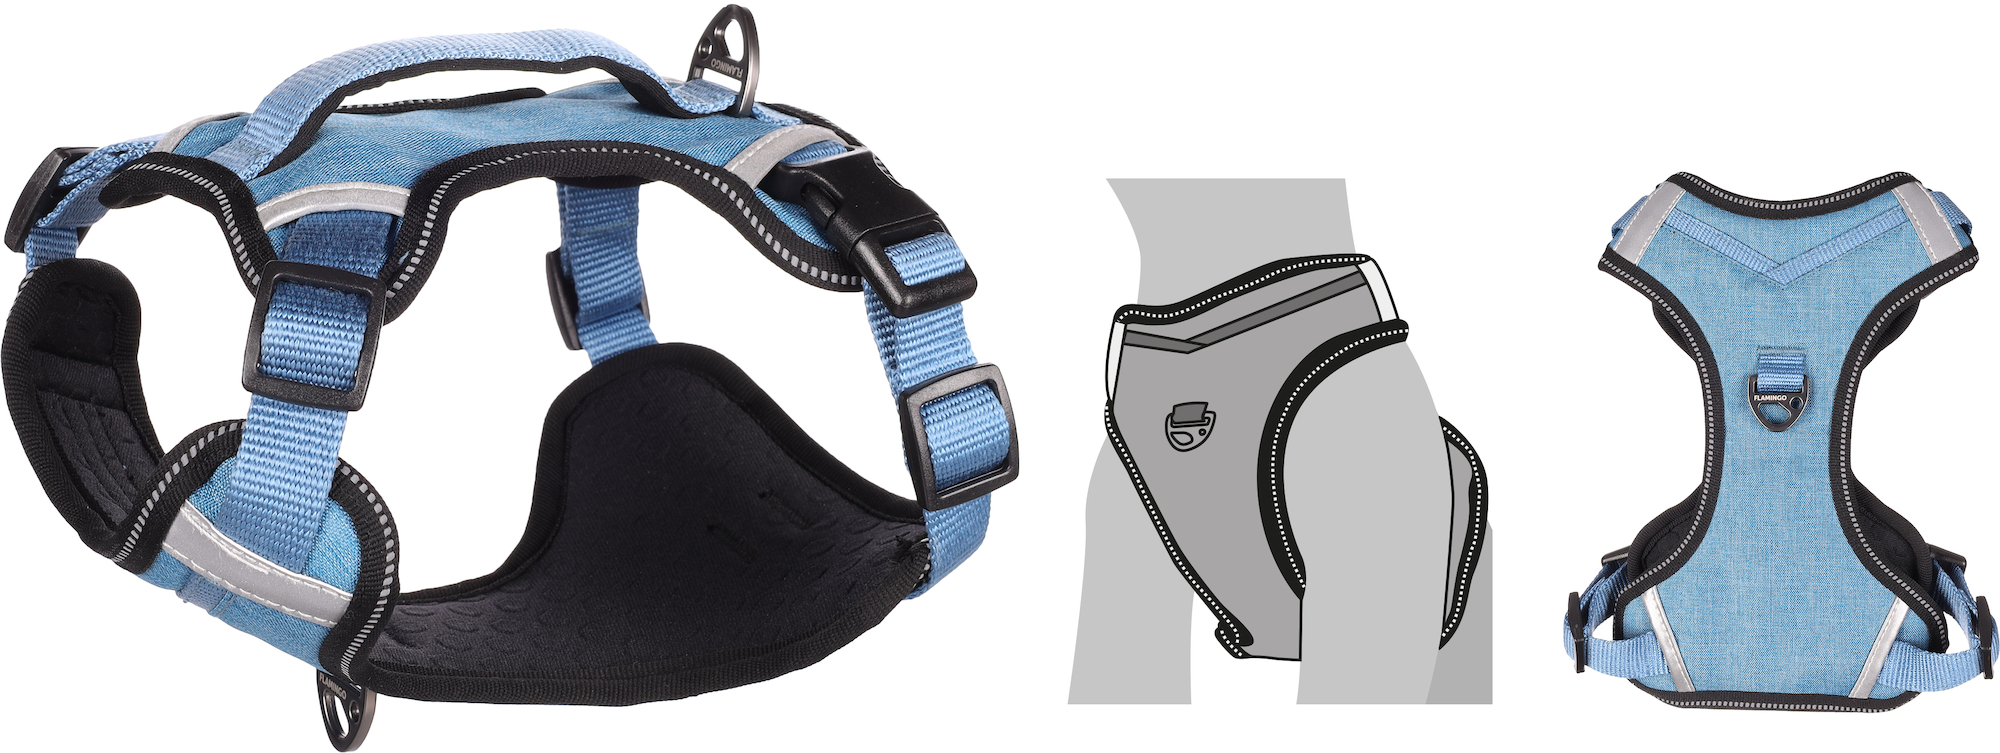 HERON Arnês para cão Azul Grande conforto - Vários tamanhos disponíveis